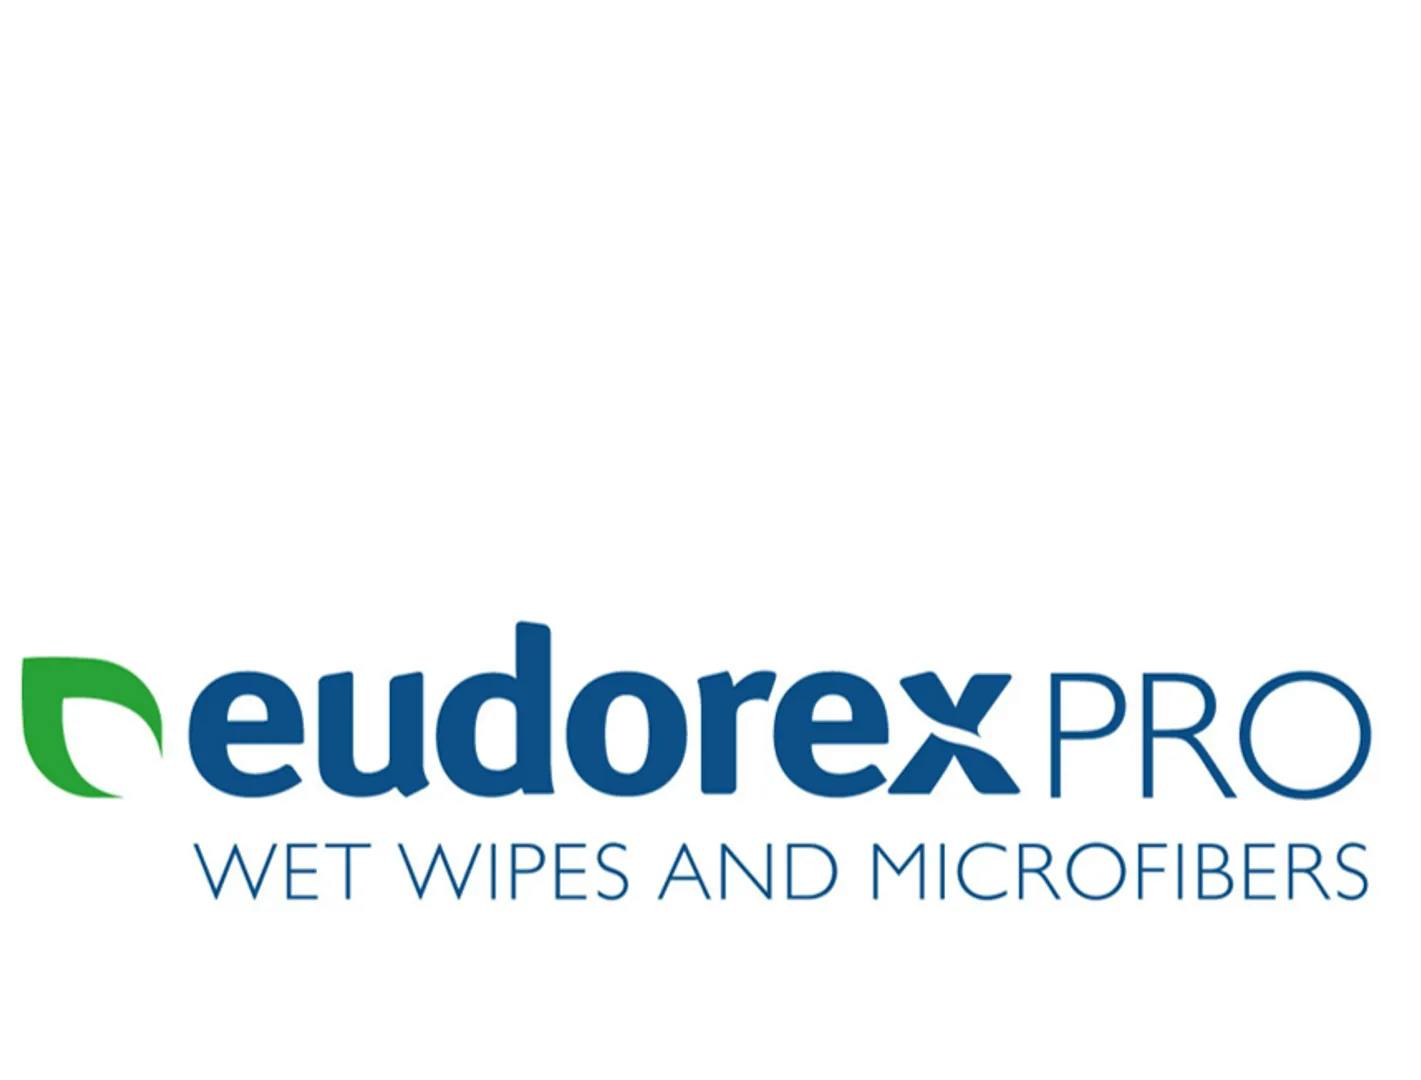 La Scelta dei Professionisti dell’Igiene EudorexPro